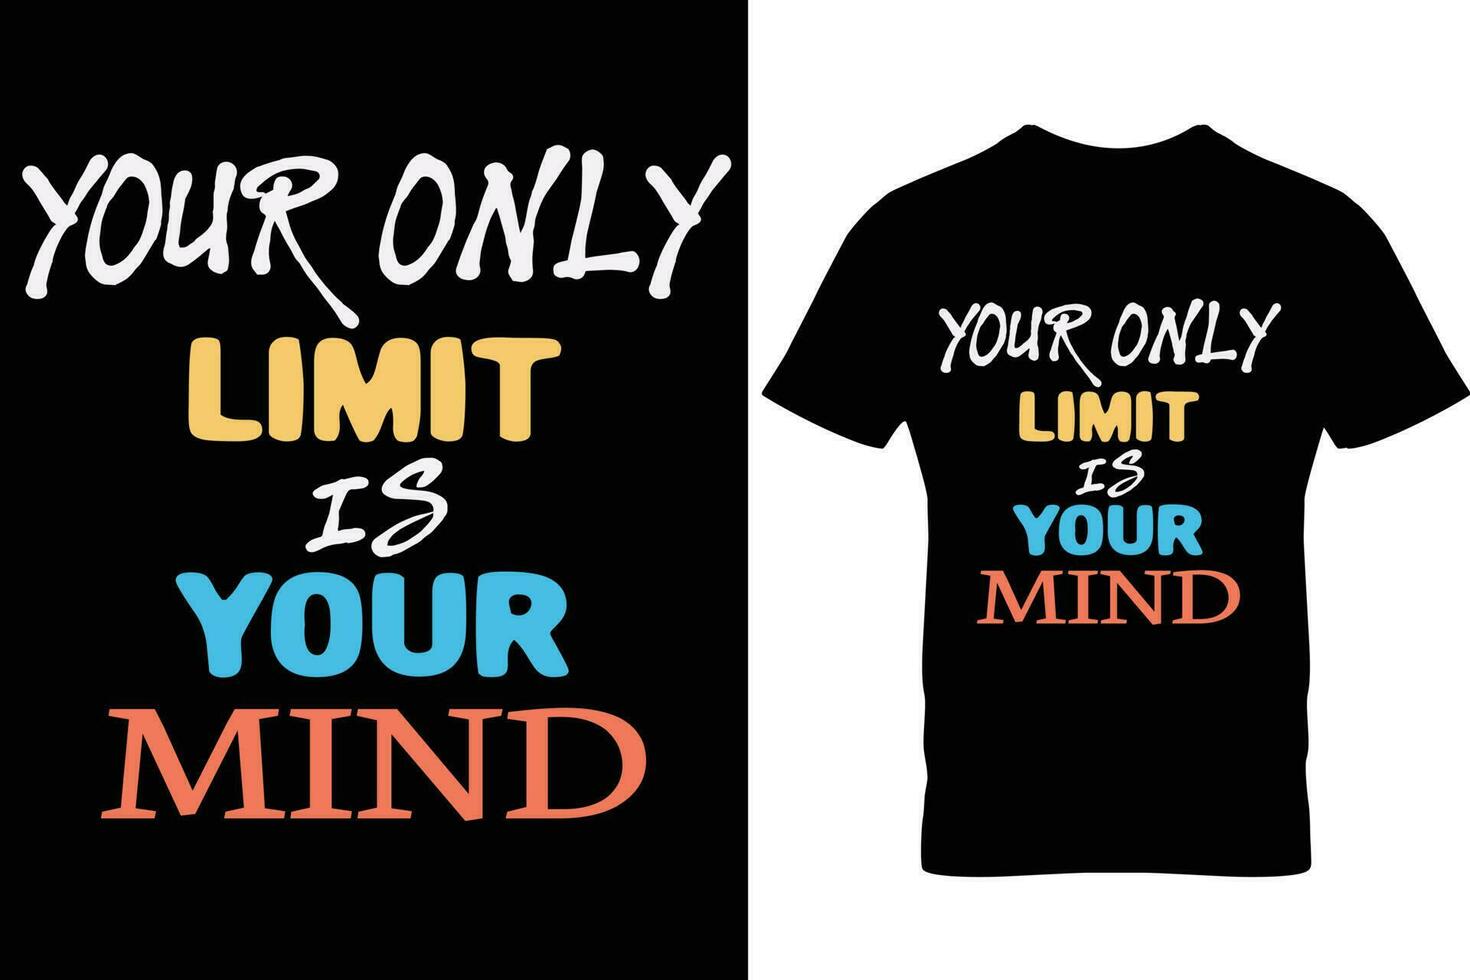 conception de t-shirt de citation de typographie de motivation vecteur